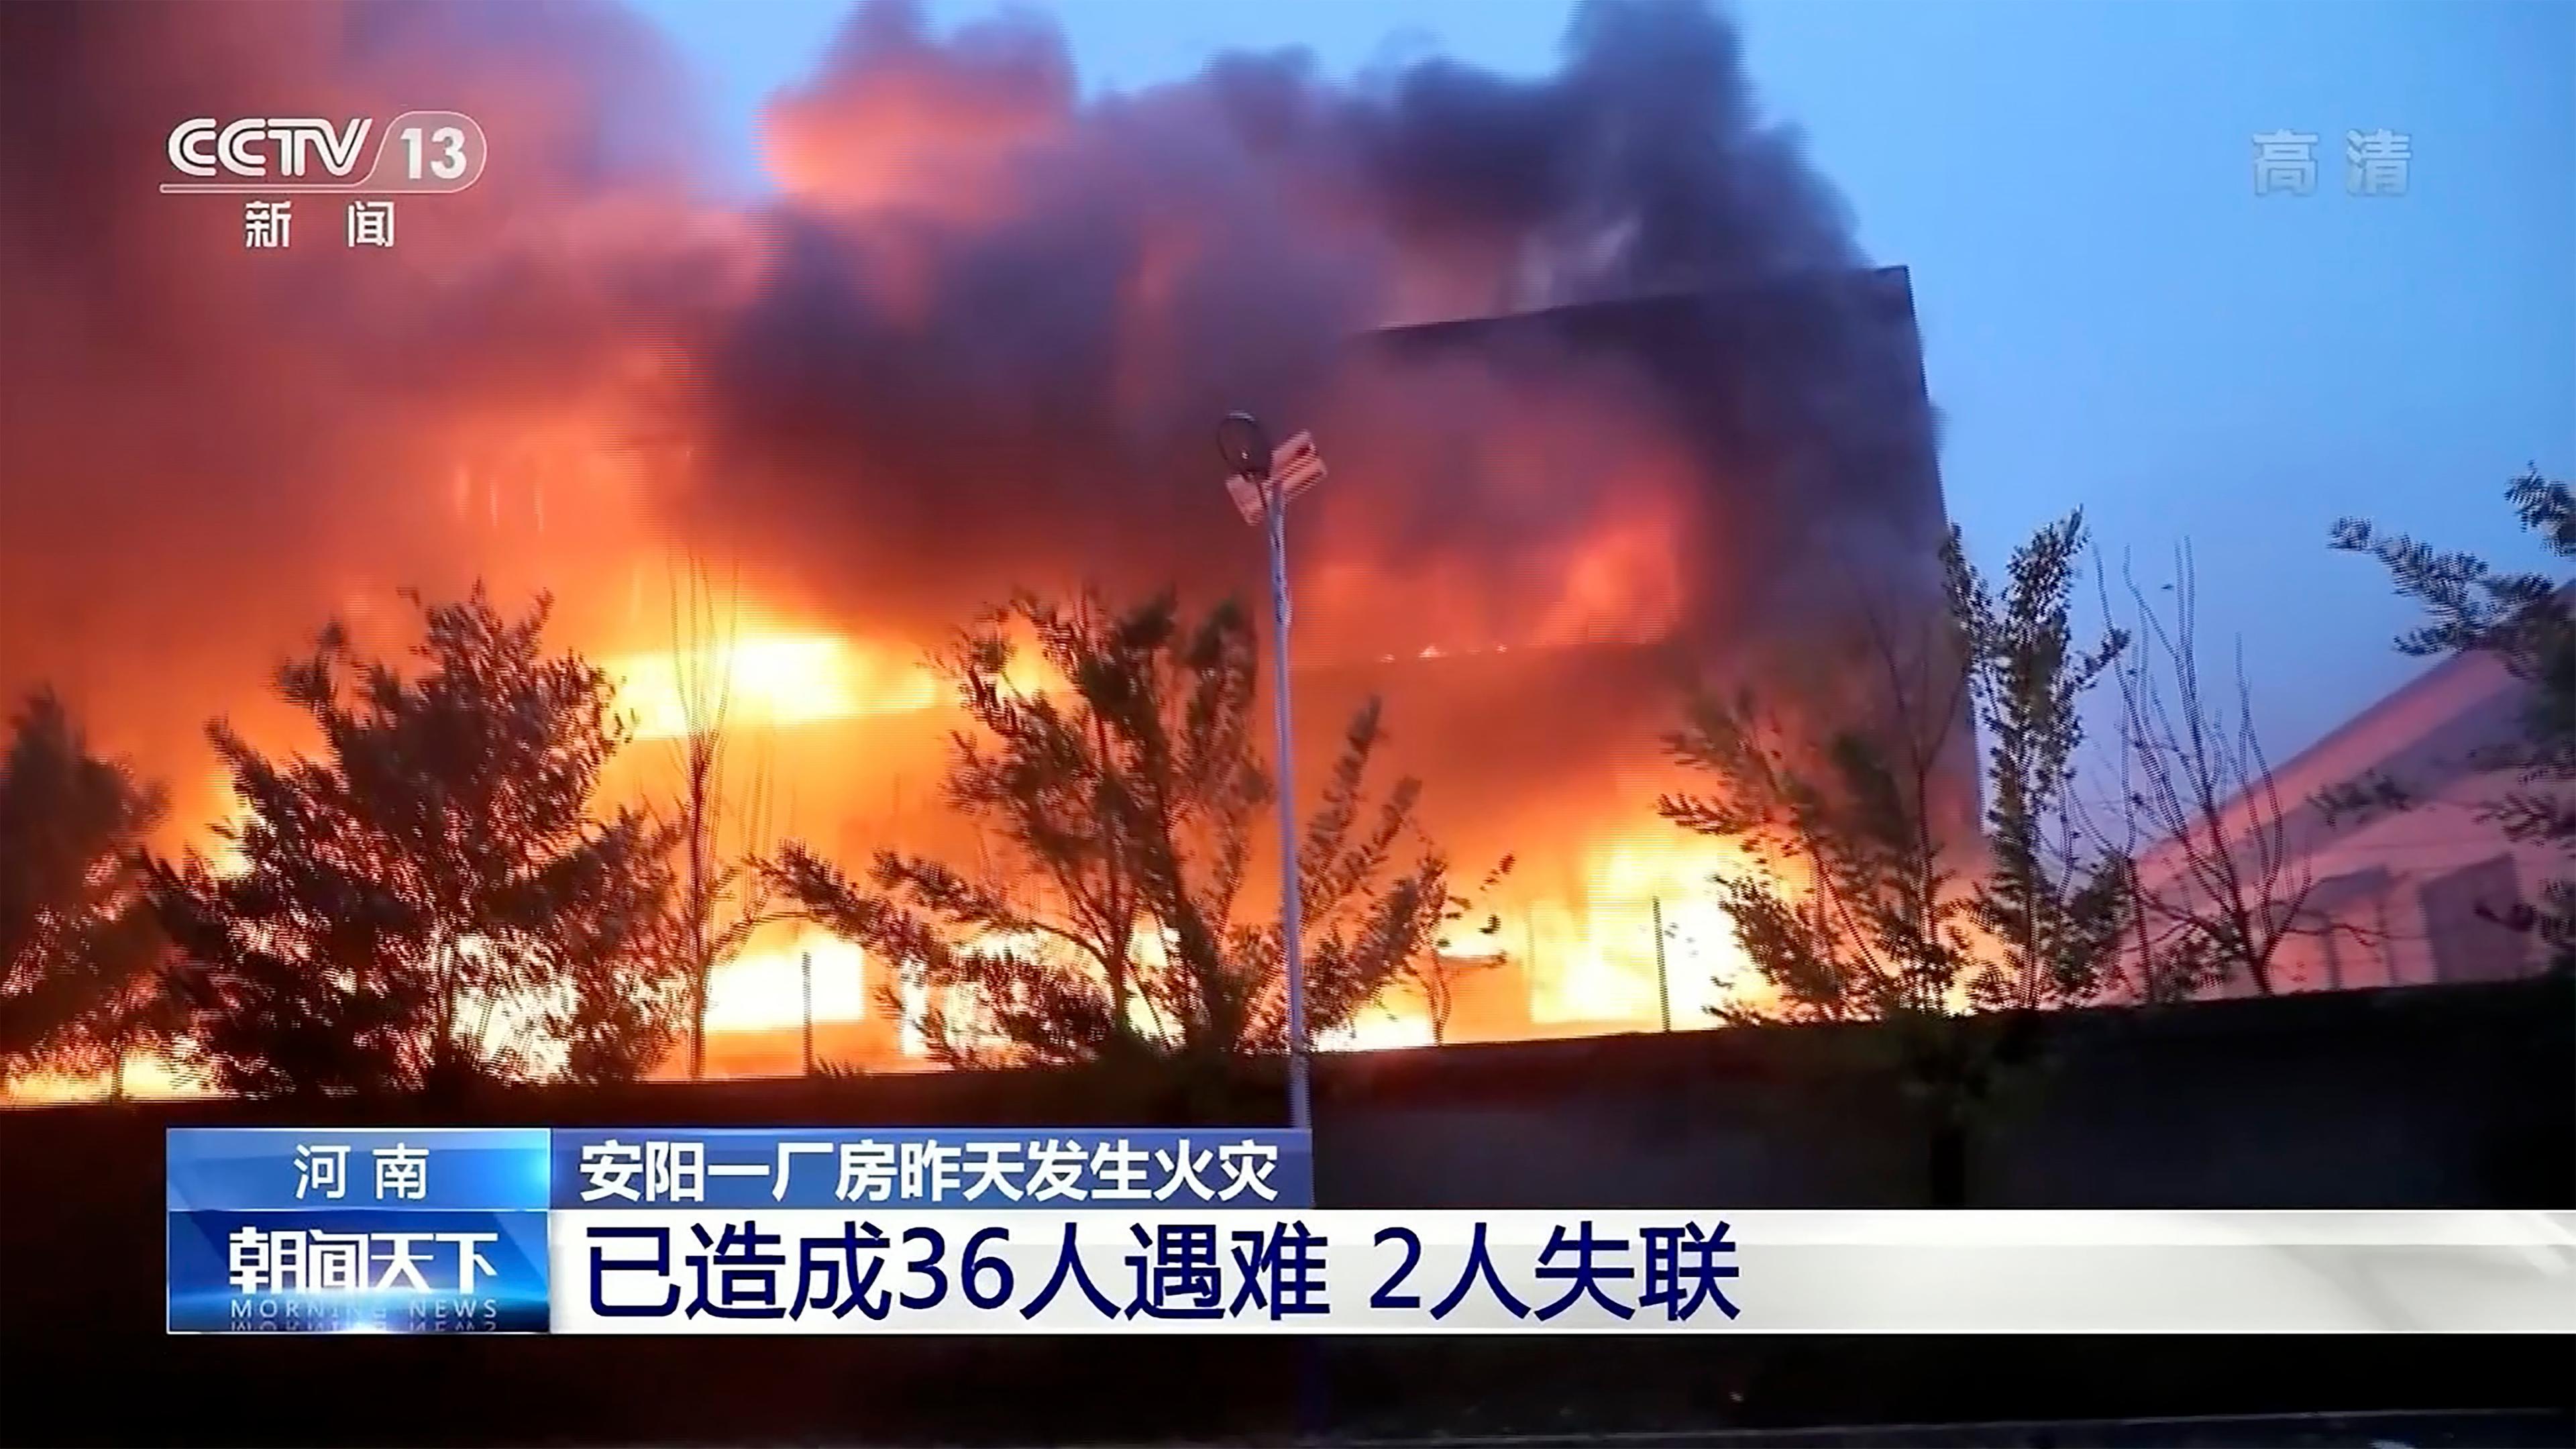 Das Fabrikgebäude in Anyang steht in Flammen.